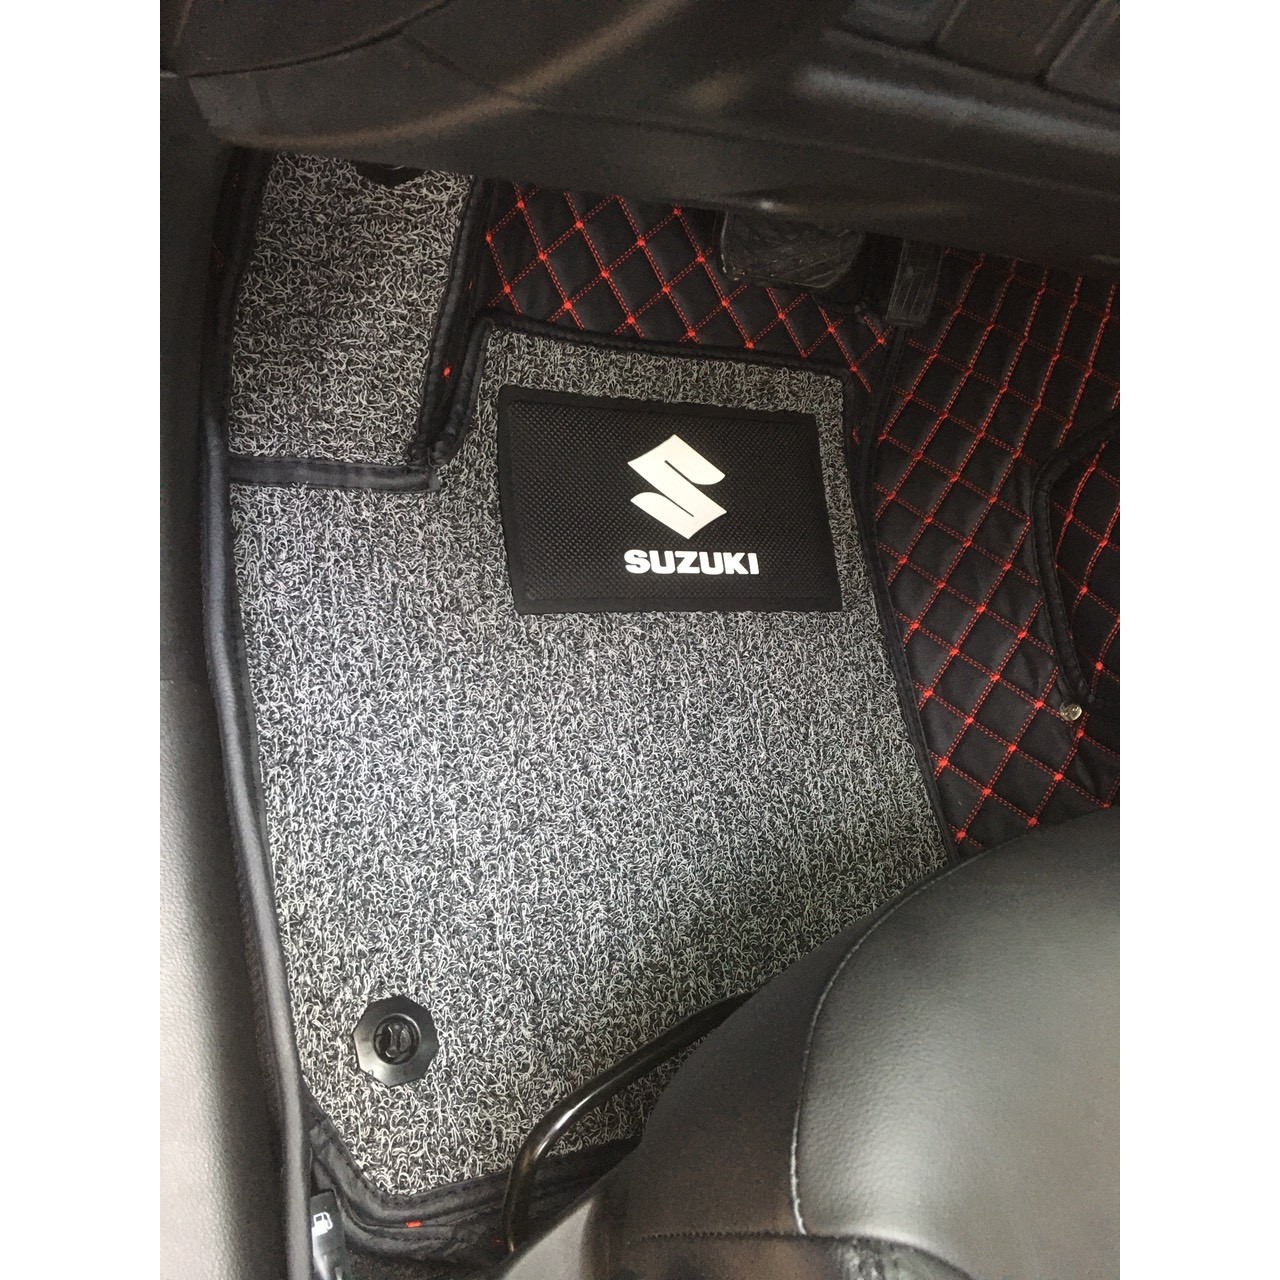 Thảm sàn ô tô 6D dành cho xe Suzuki Ciaz 2018 5 cho da Thường màu T2.2 + R3 hình ảnh thật chụp bằng điện thoại không chỉnh sửa có video hướng dẫn lắp đặt tại nhà